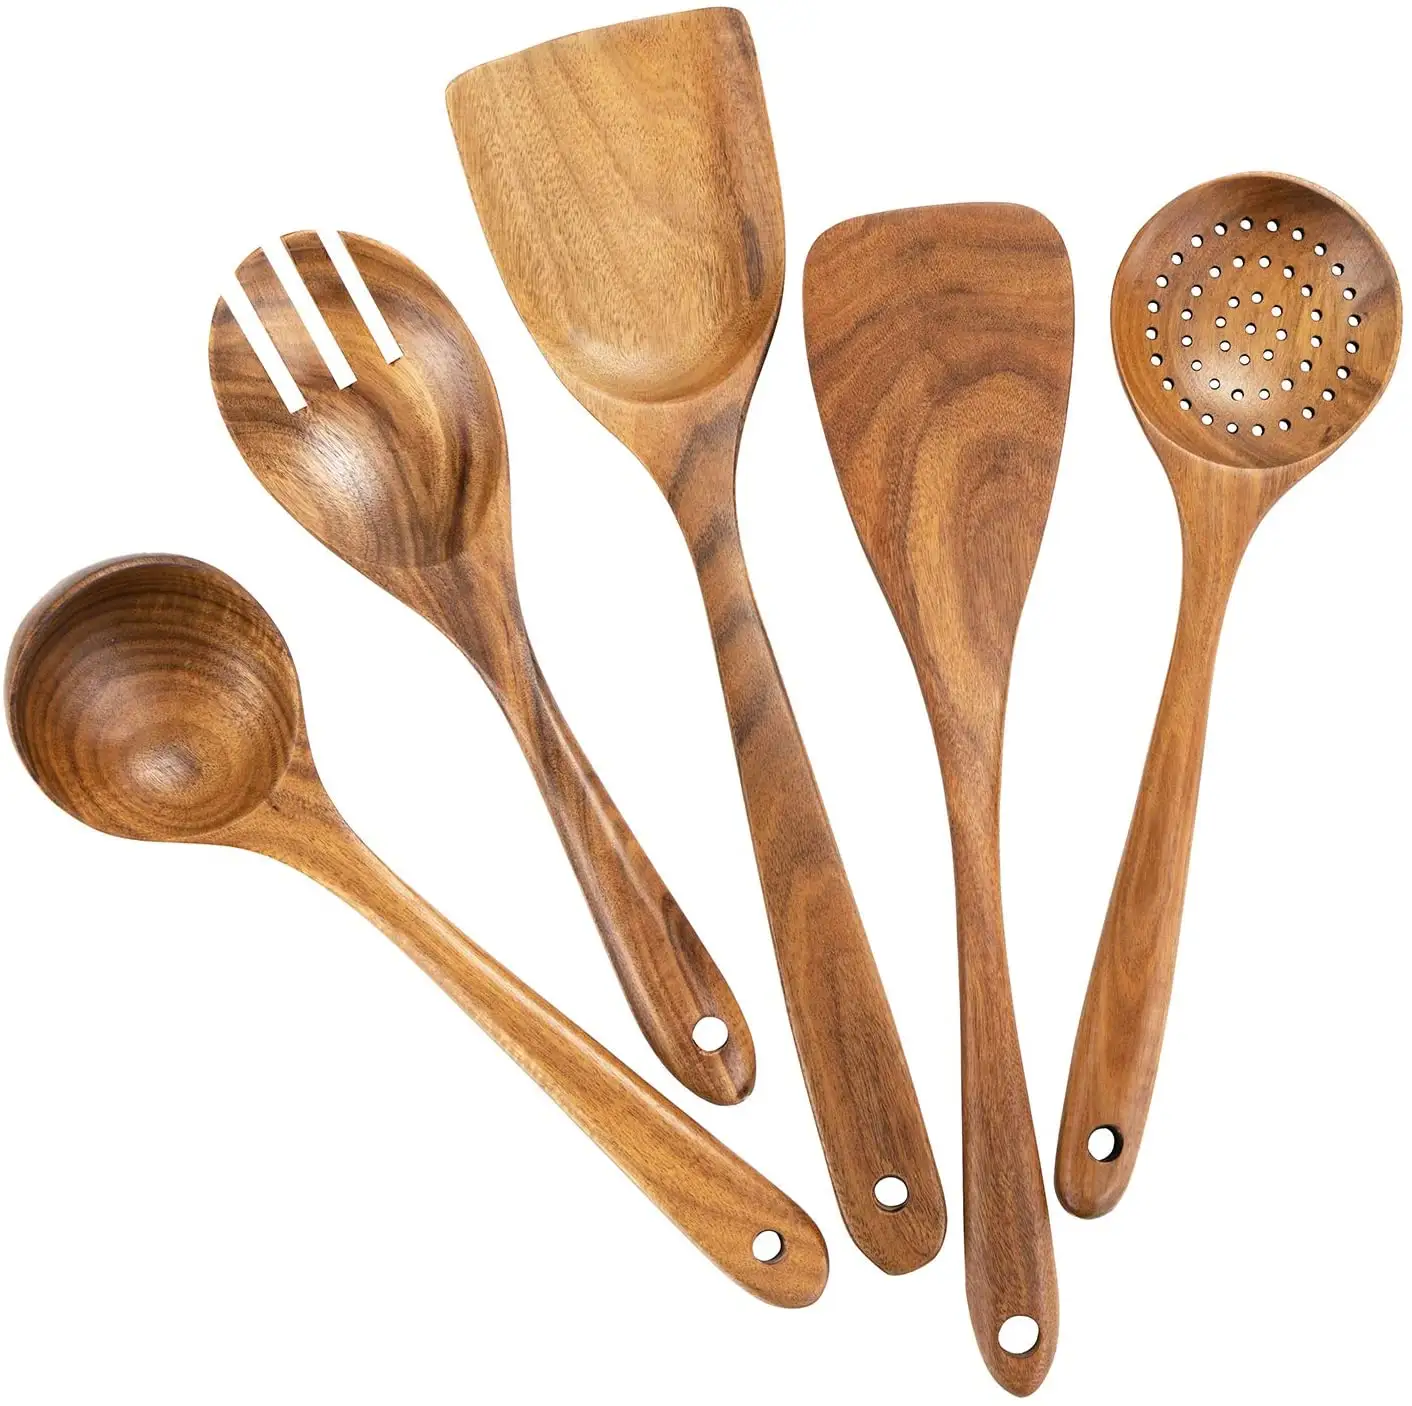 Wooden Cooking Utensils,Teak Wooden Spoons for Cooking Wood Utensil for Nonstick Cookware,Kitchen Utensils Set 5